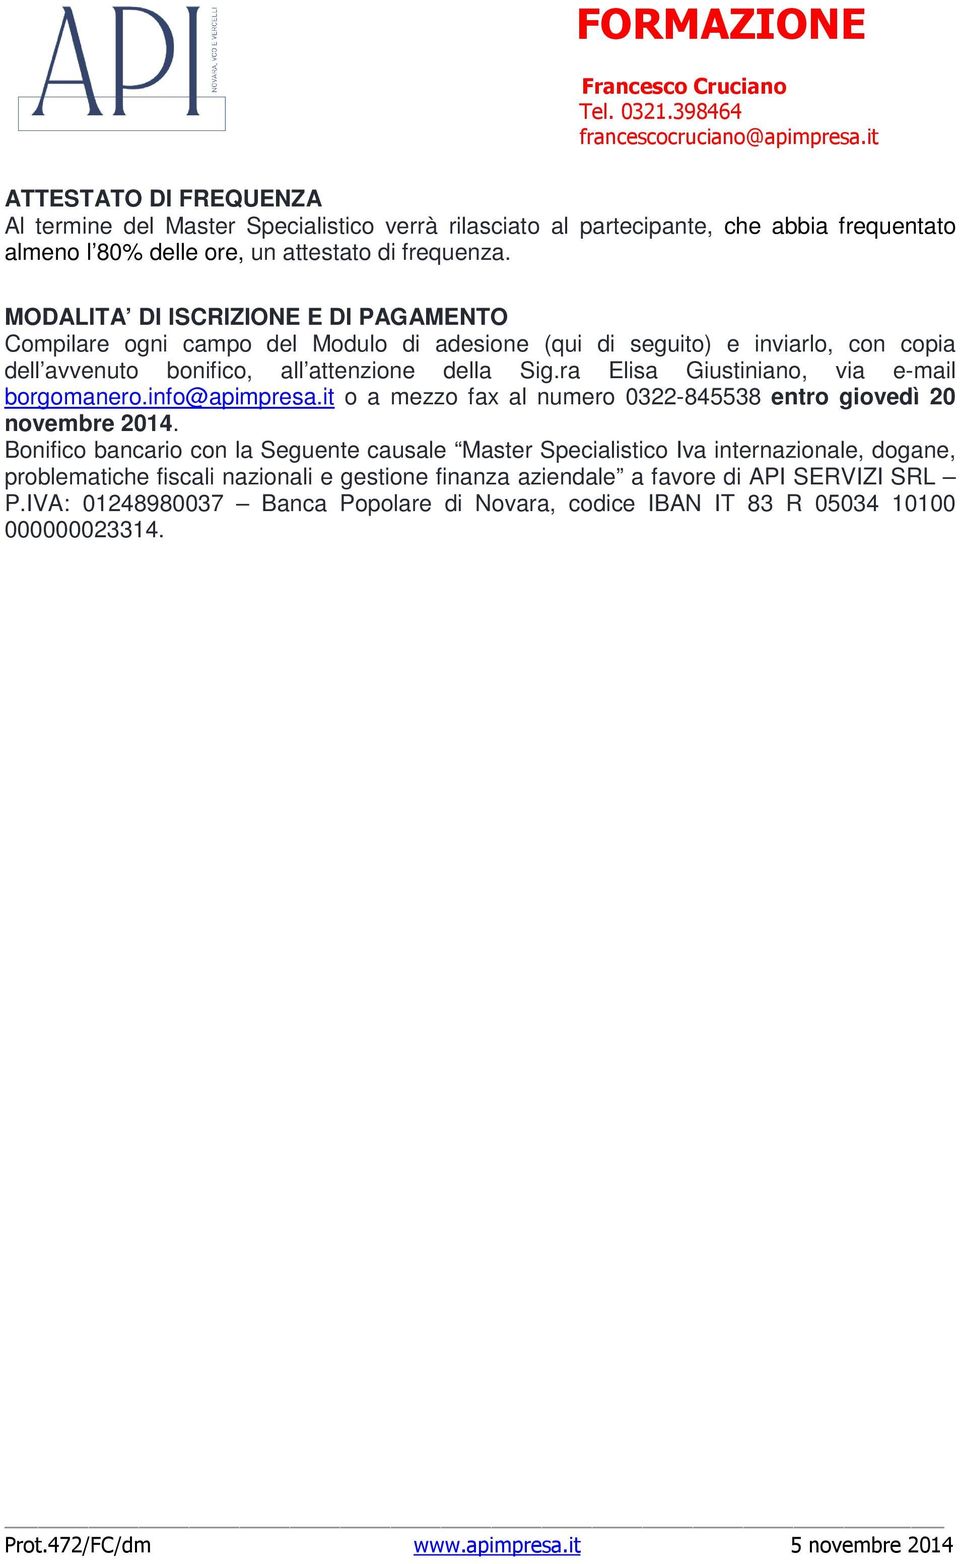 ra Elisa Giustiniano, via e-mail borgomanero.info@apimpresa.it o a mezzo fax al numero 0322-845538 entro giovedì 20 novembre 2014.